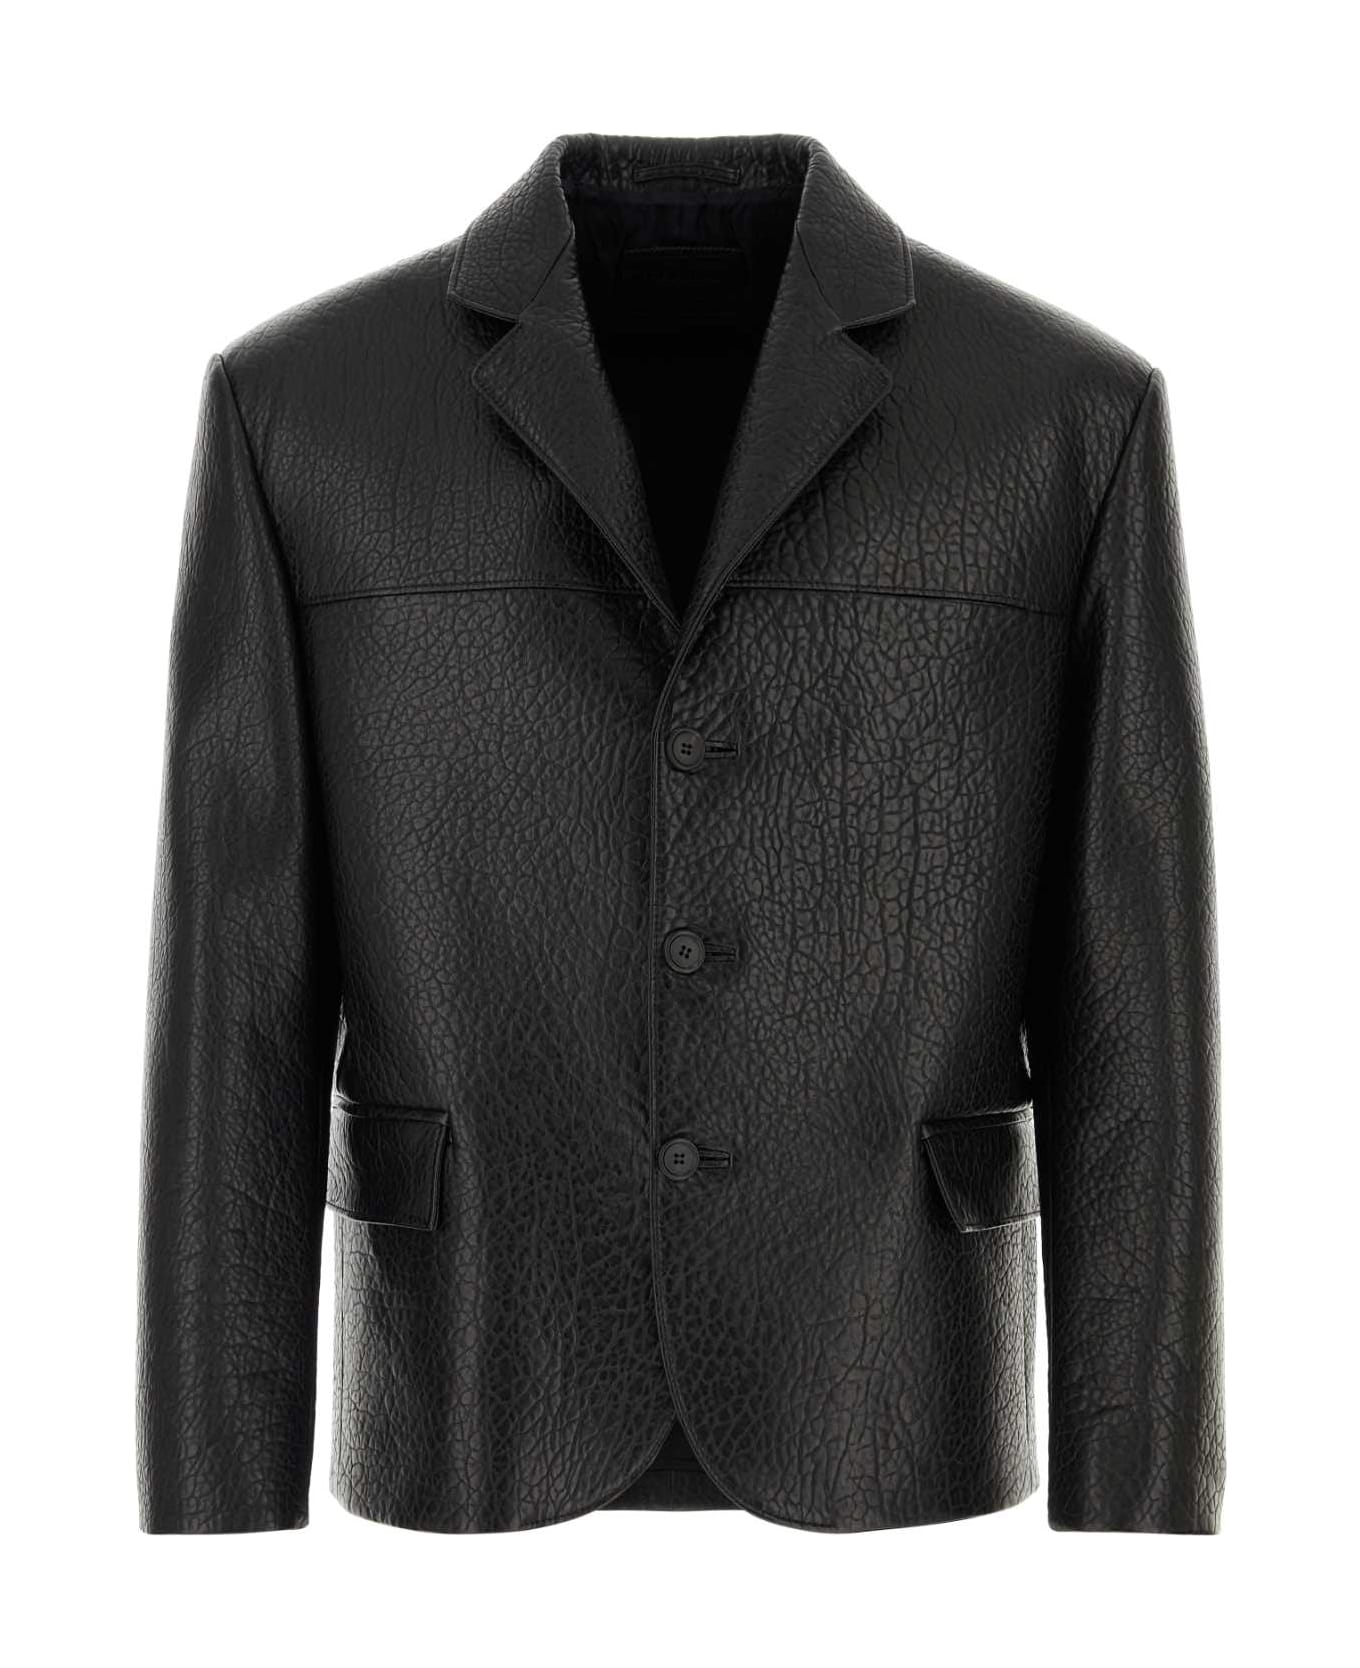 Prada Black Nappa Leather Blazer - NERO